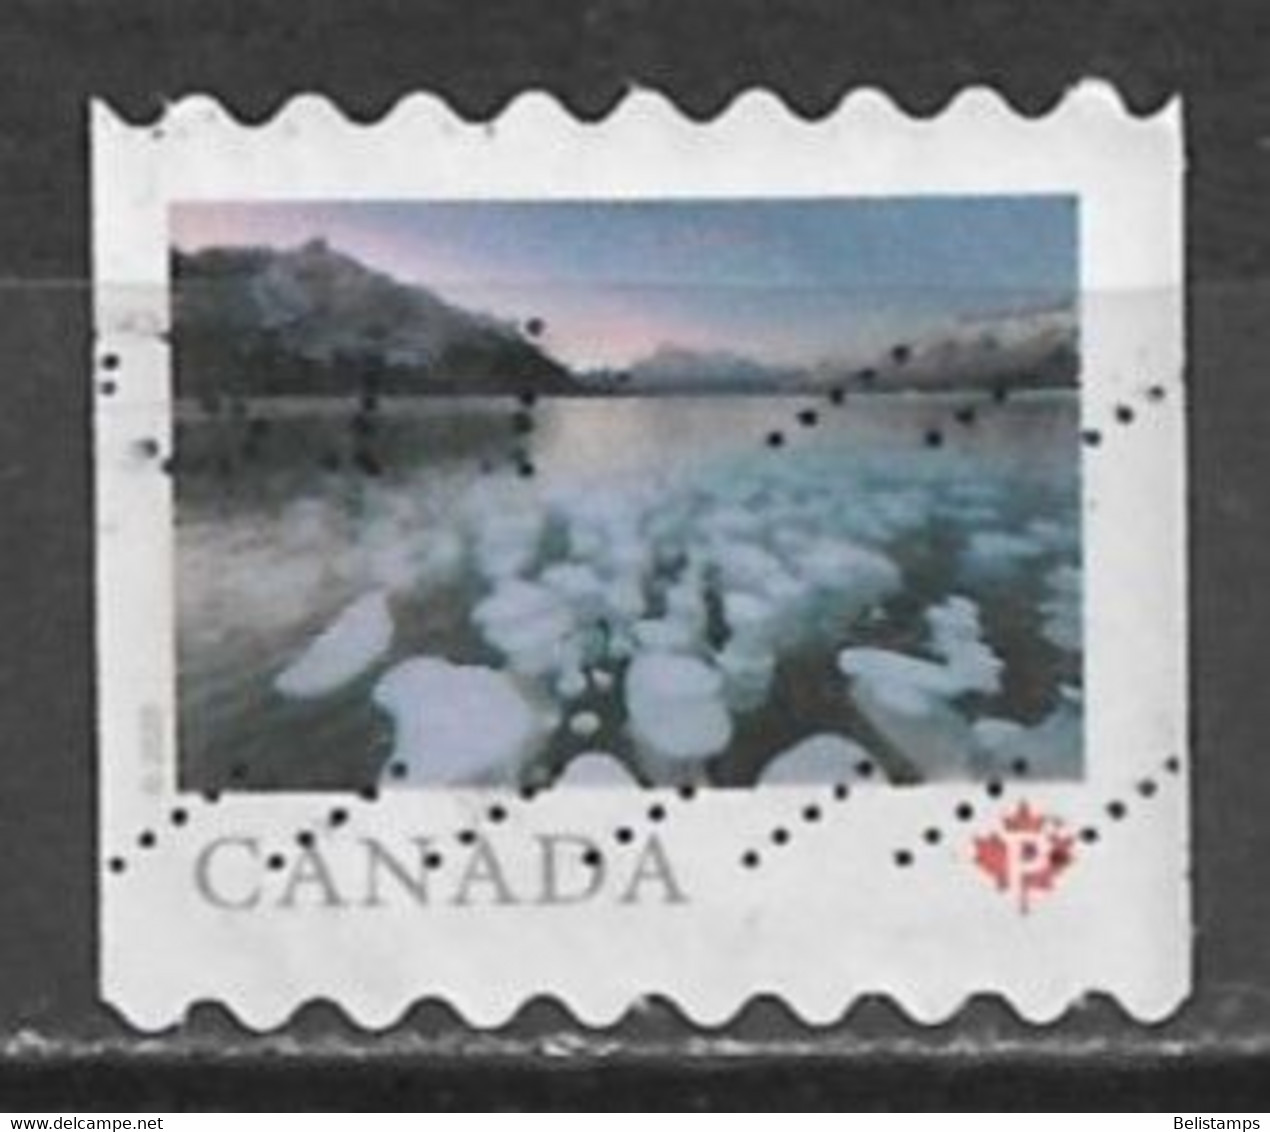 Canada 2020. Scott #3212 (U) Abraham Lake, Alberta - Rollo De Sellos